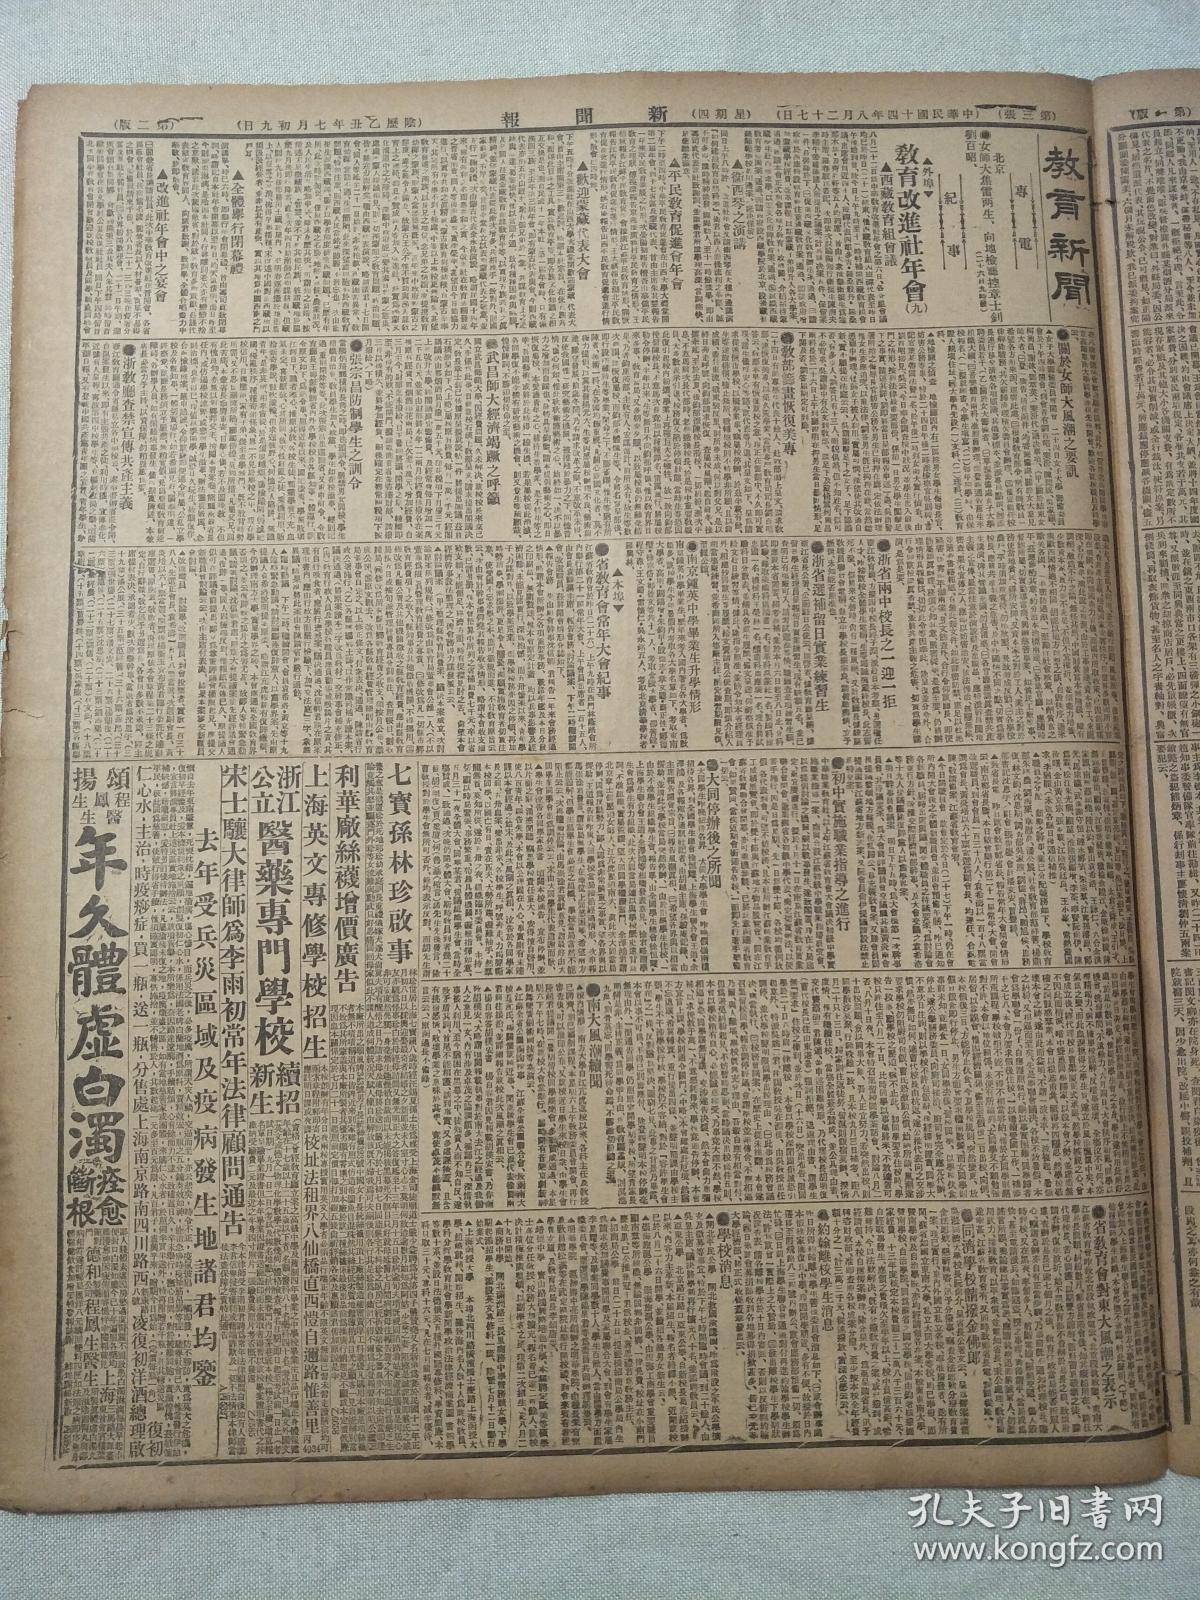 1925年8月27日新闻报4开4版